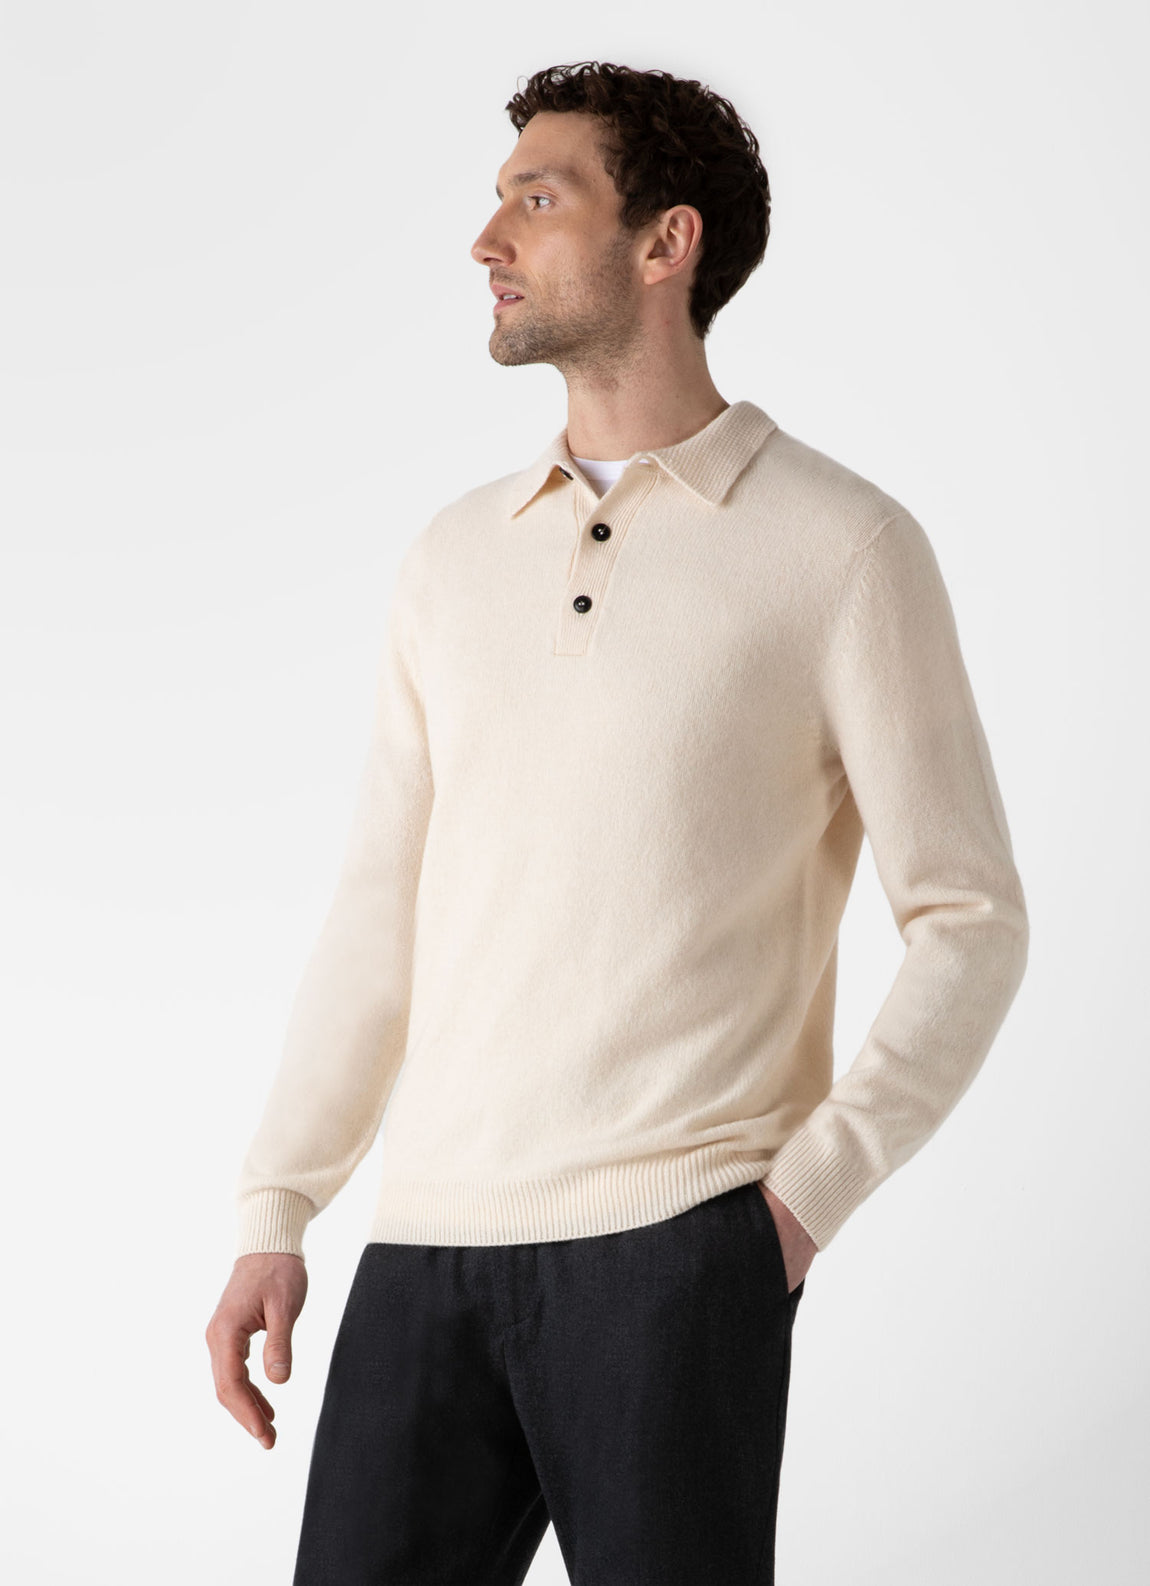 Men's Lambswool Polo Shirt in Ecru | Sunspel